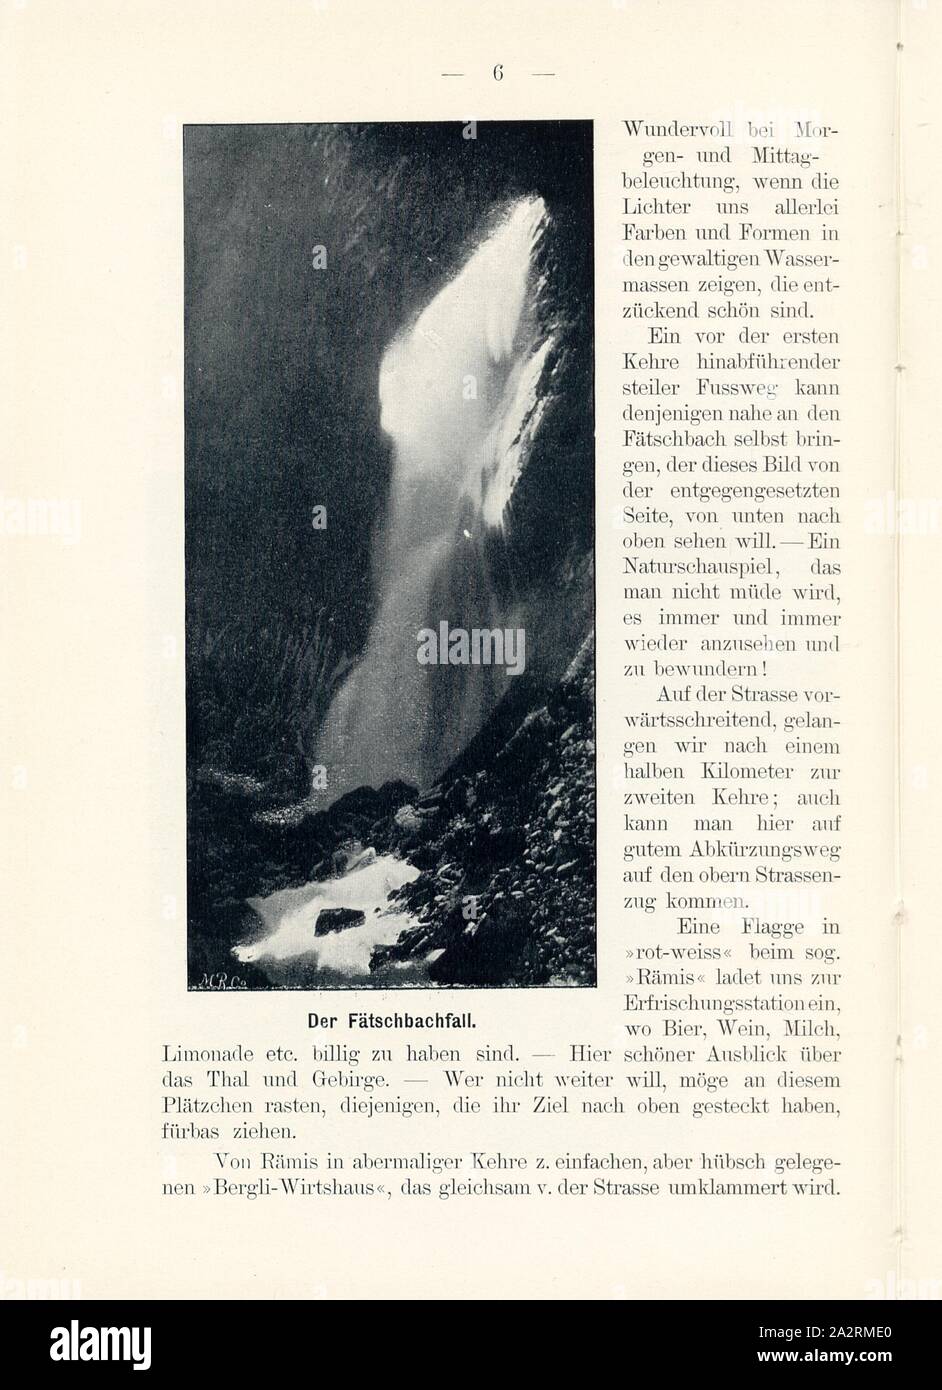 The Fätschbach case, Waterfall in Linthal (Canton of Glarus), Signed: M.R.C, Fig. 5, p. 6, Meisenbach, Riffarth und Co. (imp.), 1900, J. Knobel: Illustrierter Reisebegleiter für die Alpenstrasse des Klausen und ihre Zufahrtslinien. Glarus: Buchdruckerei J. Spälti, 1900 Stock Photo